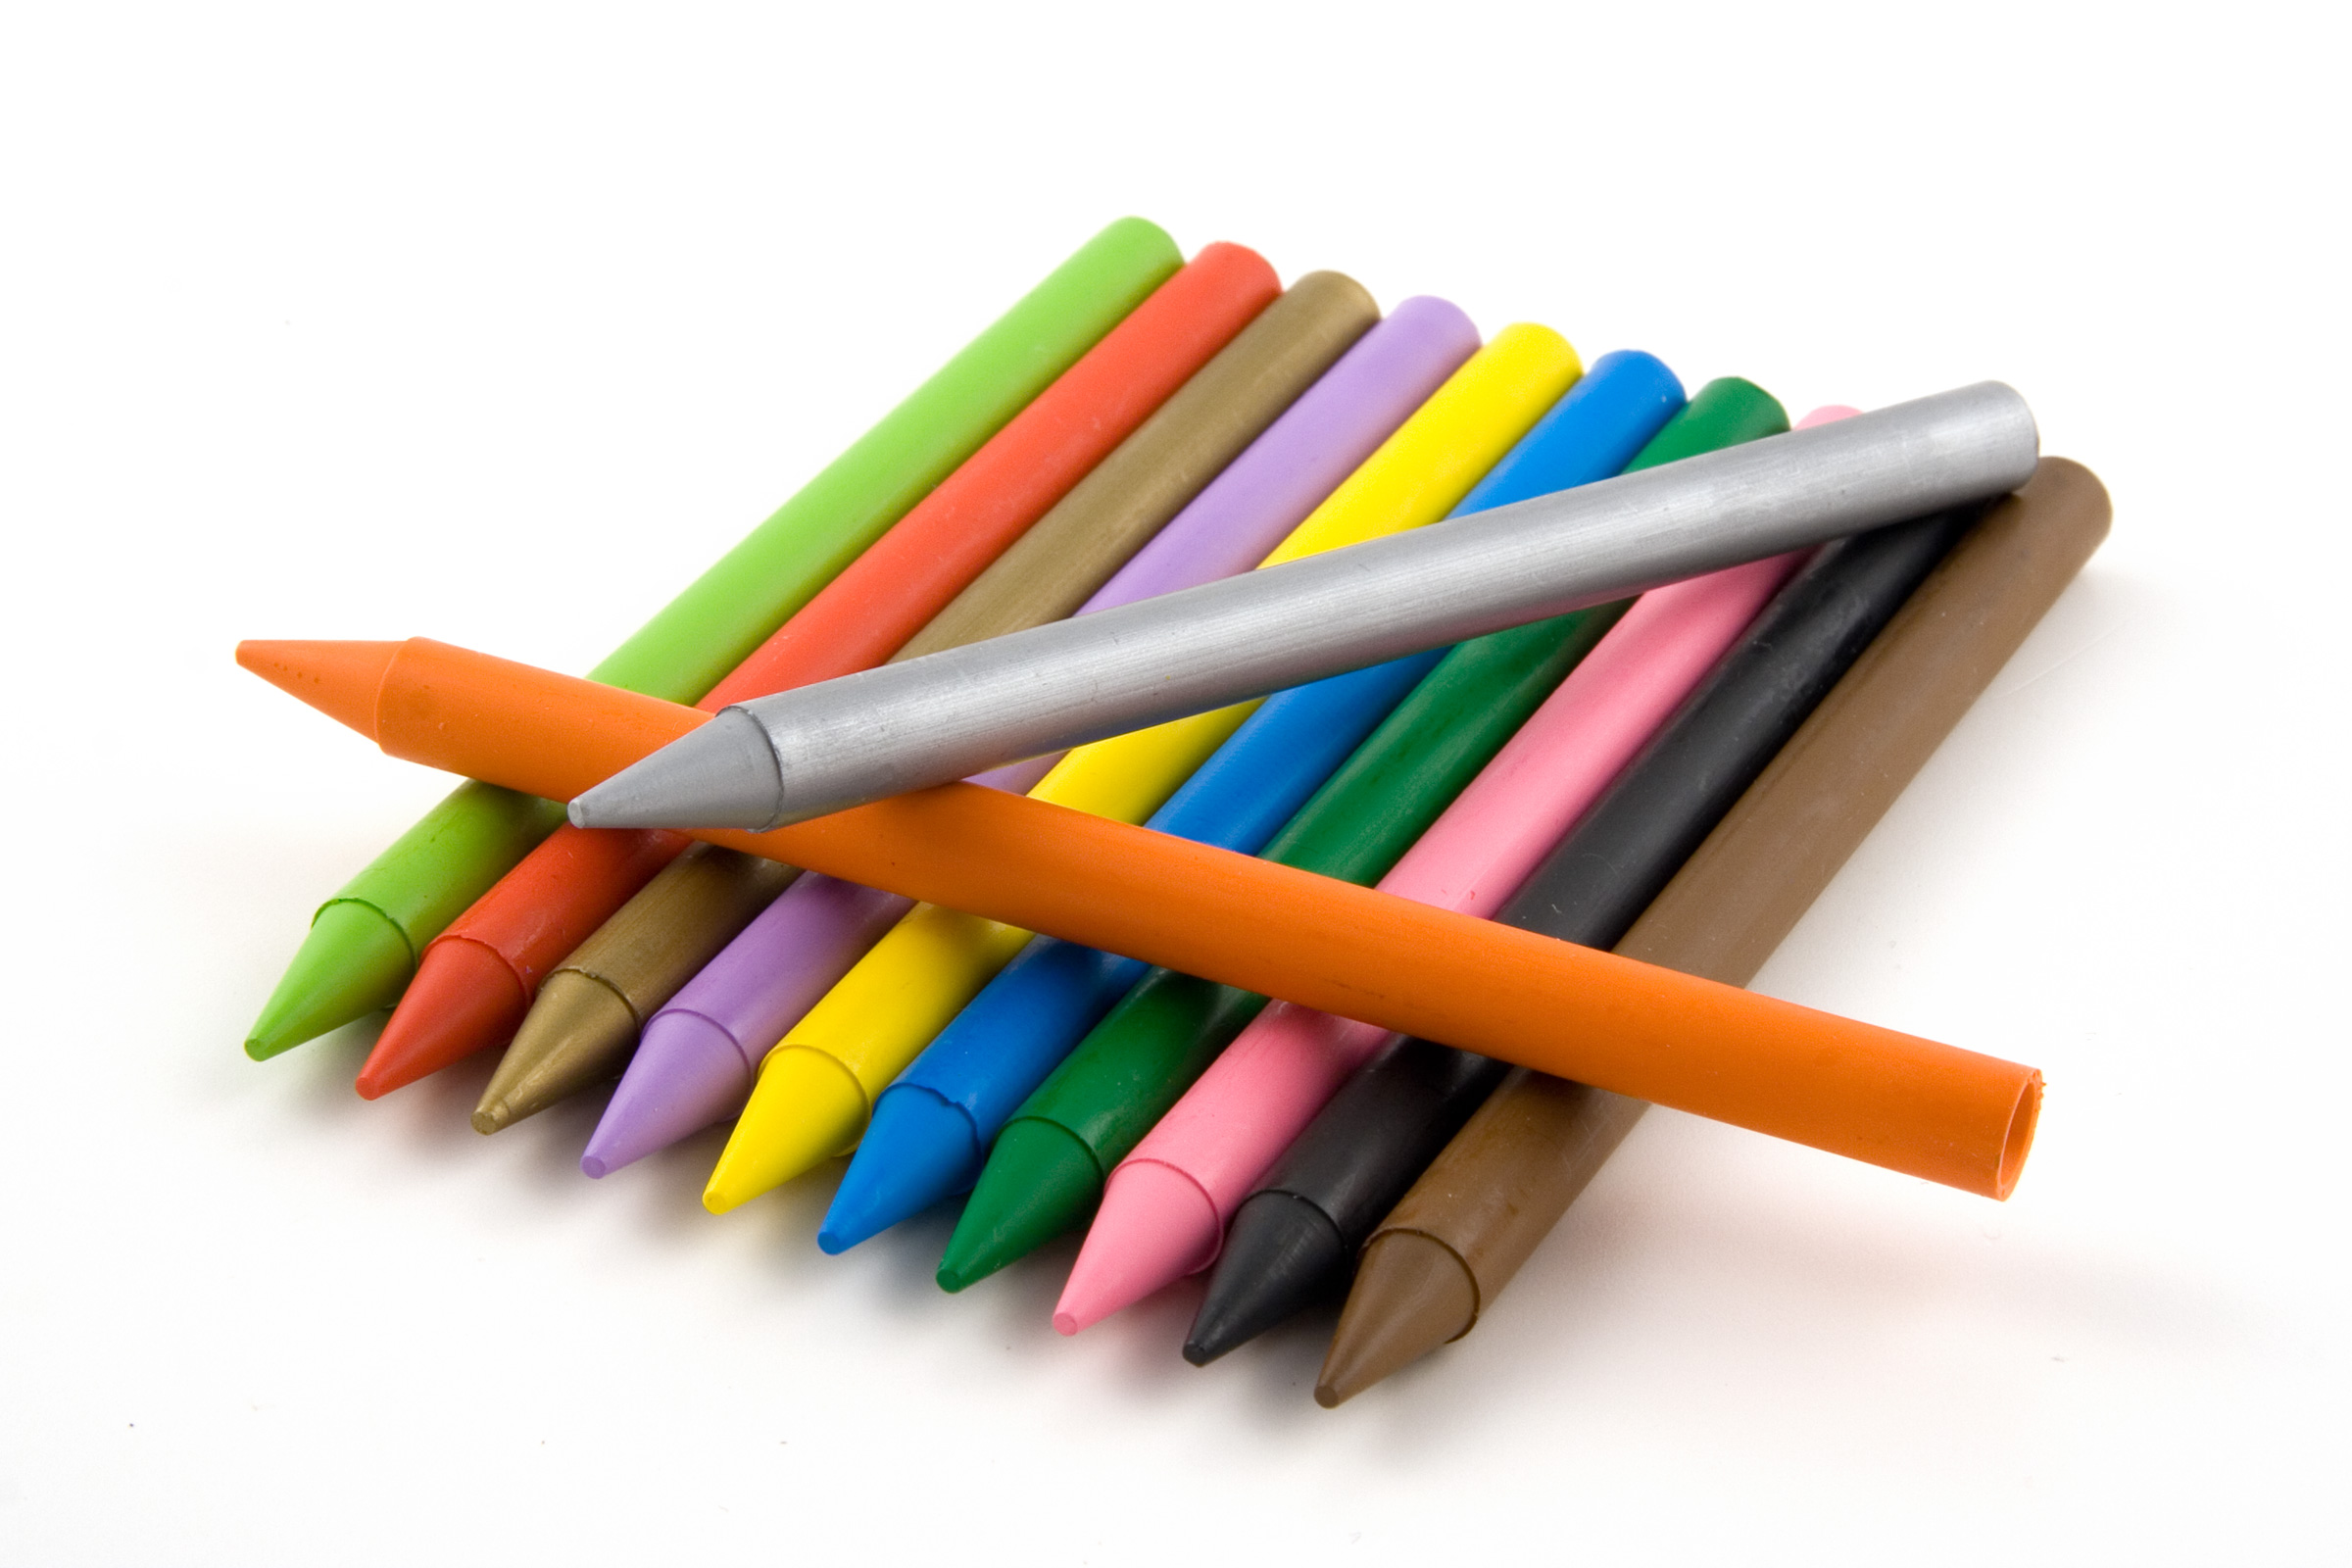 Multicolored wax crayons